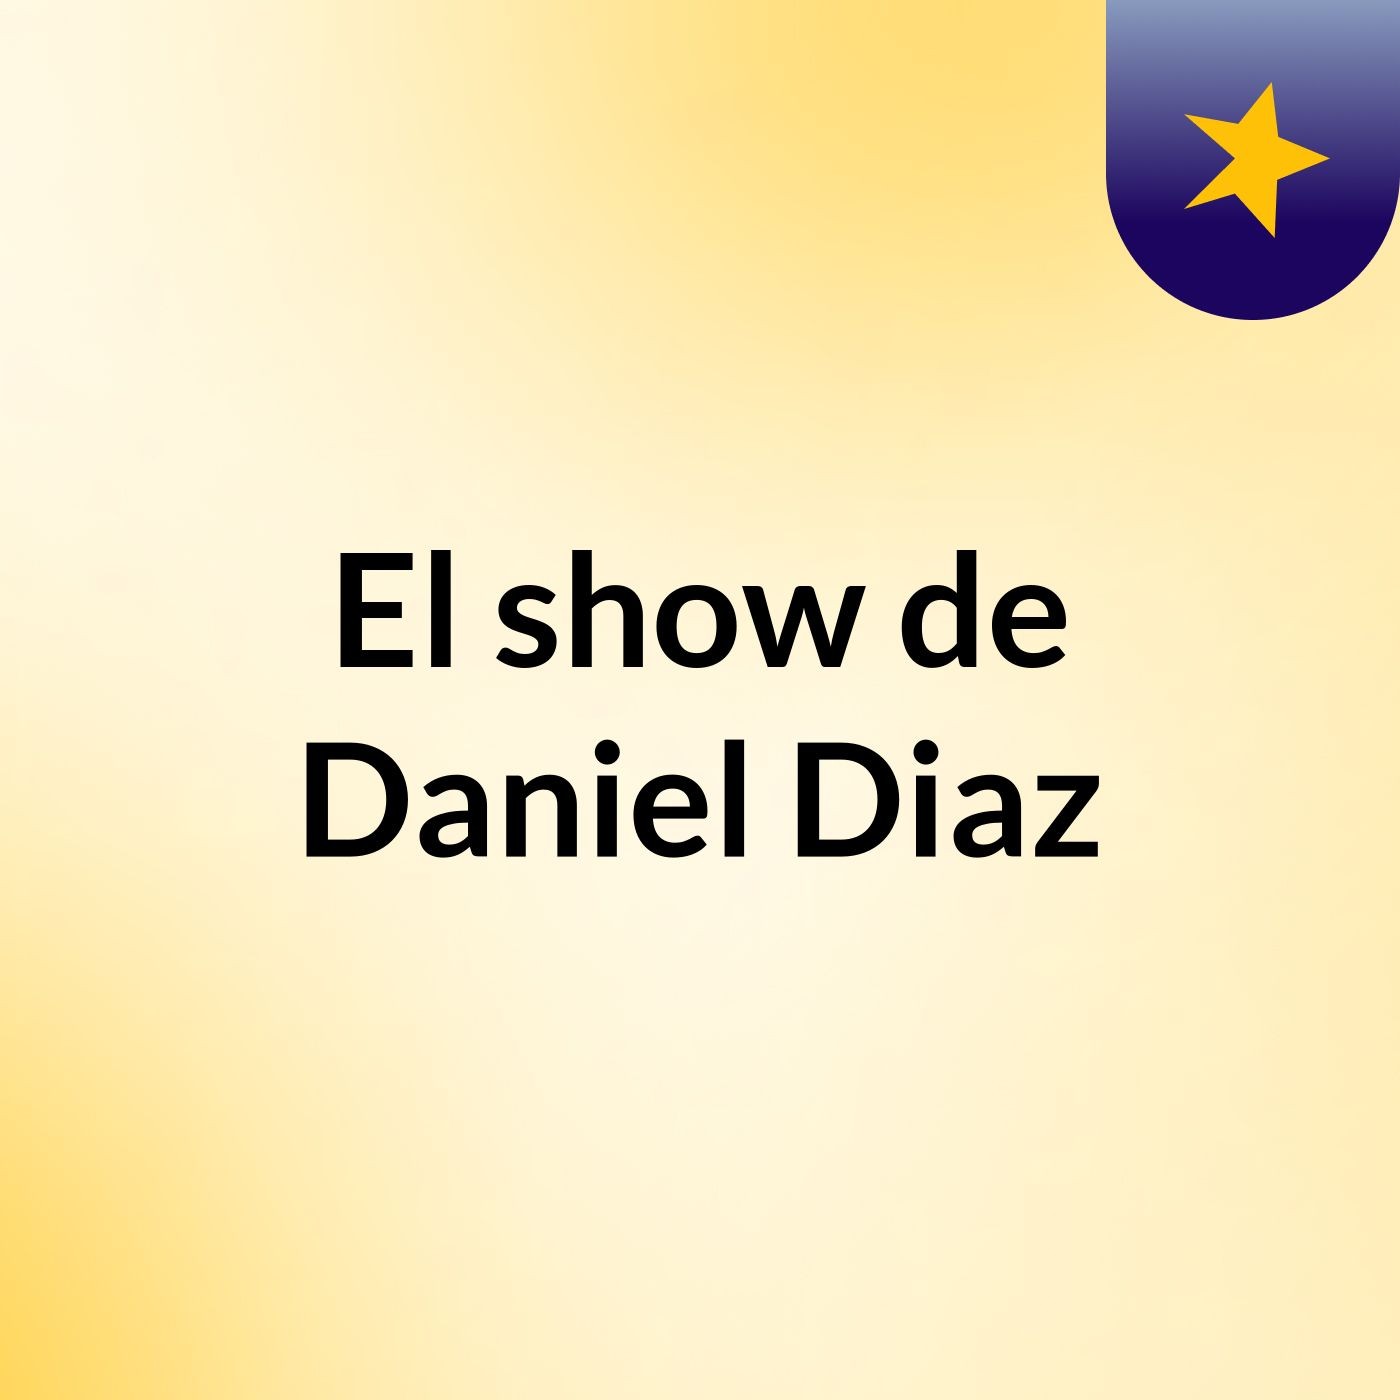 El show de Daniel Diaz